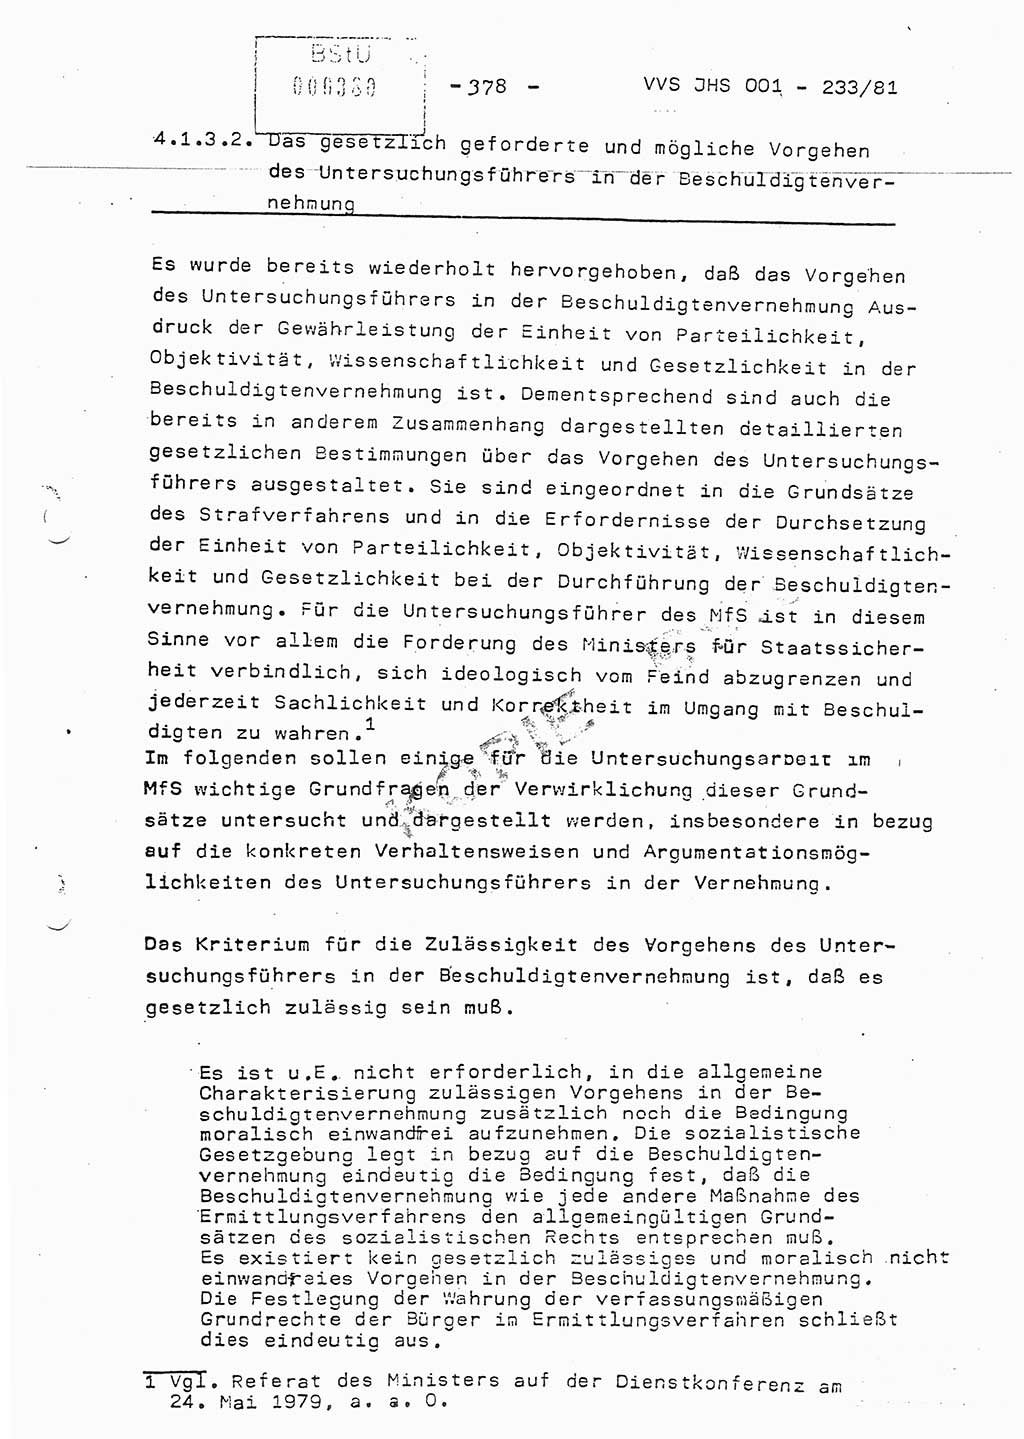 Dissertation Oberstleutnant Horst Zank (JHS), Oberstleutnant Dr. Karl-Heinz Knoblauch (JHS), Oberstleutnant Gustav-Adolf Kowalewski (HA Ⅸ), Oberstleutnant Wolfgang Plötner (HA Ⅸ), Ministerium für Staatssicherheit (MfS) [Deutsche Demokratische Republik (DDR)], Juristische Hochschule (JHS), Vertrauliche Verschlußsache (VVS) o001-233/81, Potsdam 1981, Blatt 378 (Diss. MfS DDR JHS VVS o001-233/81 1981, Bl. 378)